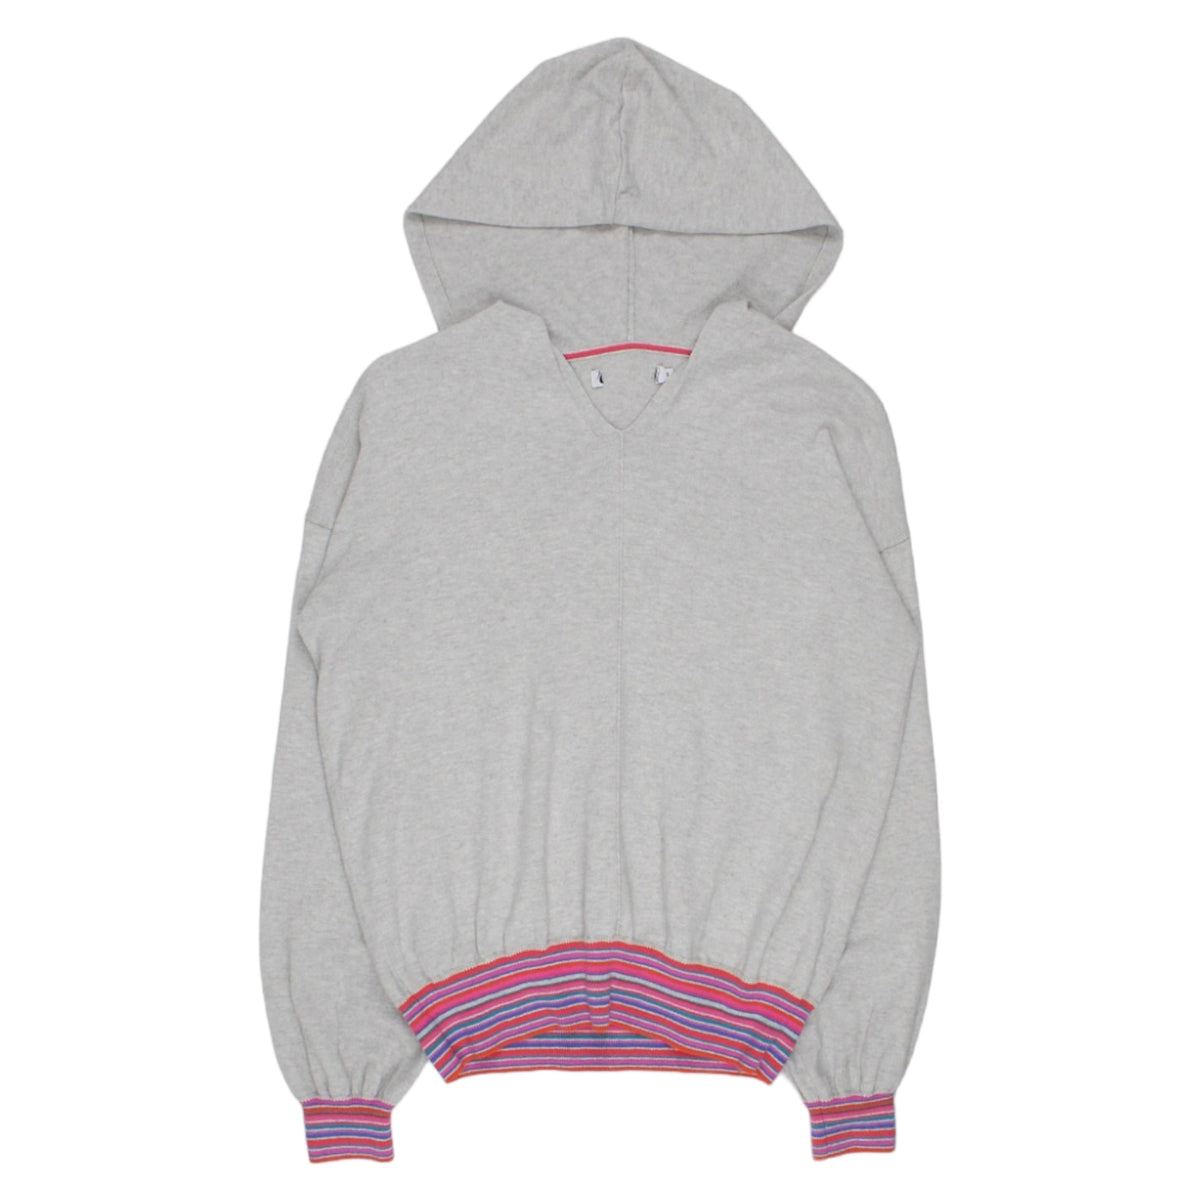 NRBY Grey/Multi Knitted Hoodie - Sample